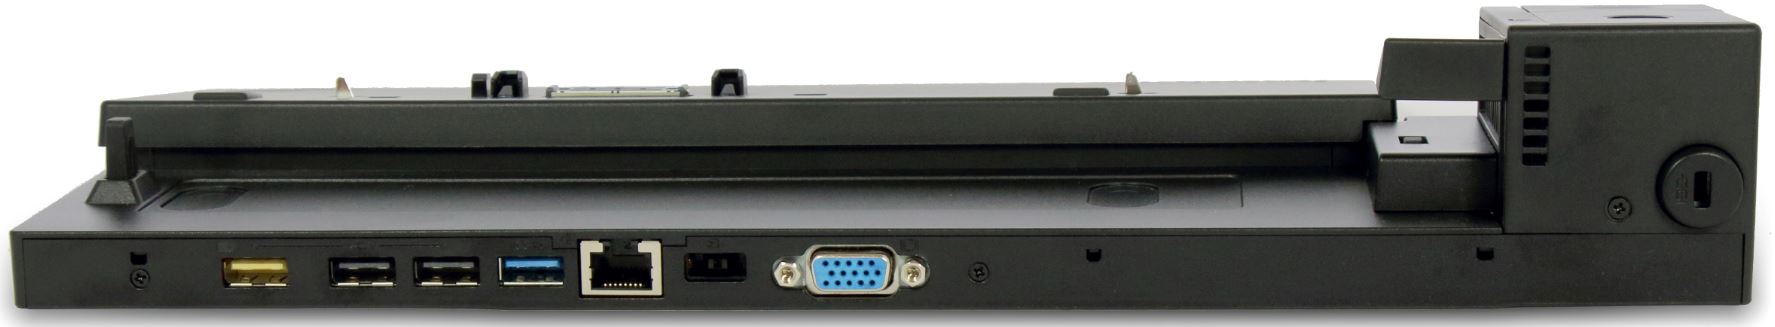 ThinkPadベーシック・ドック 65W/90W - 製品の概要とサービス部品 